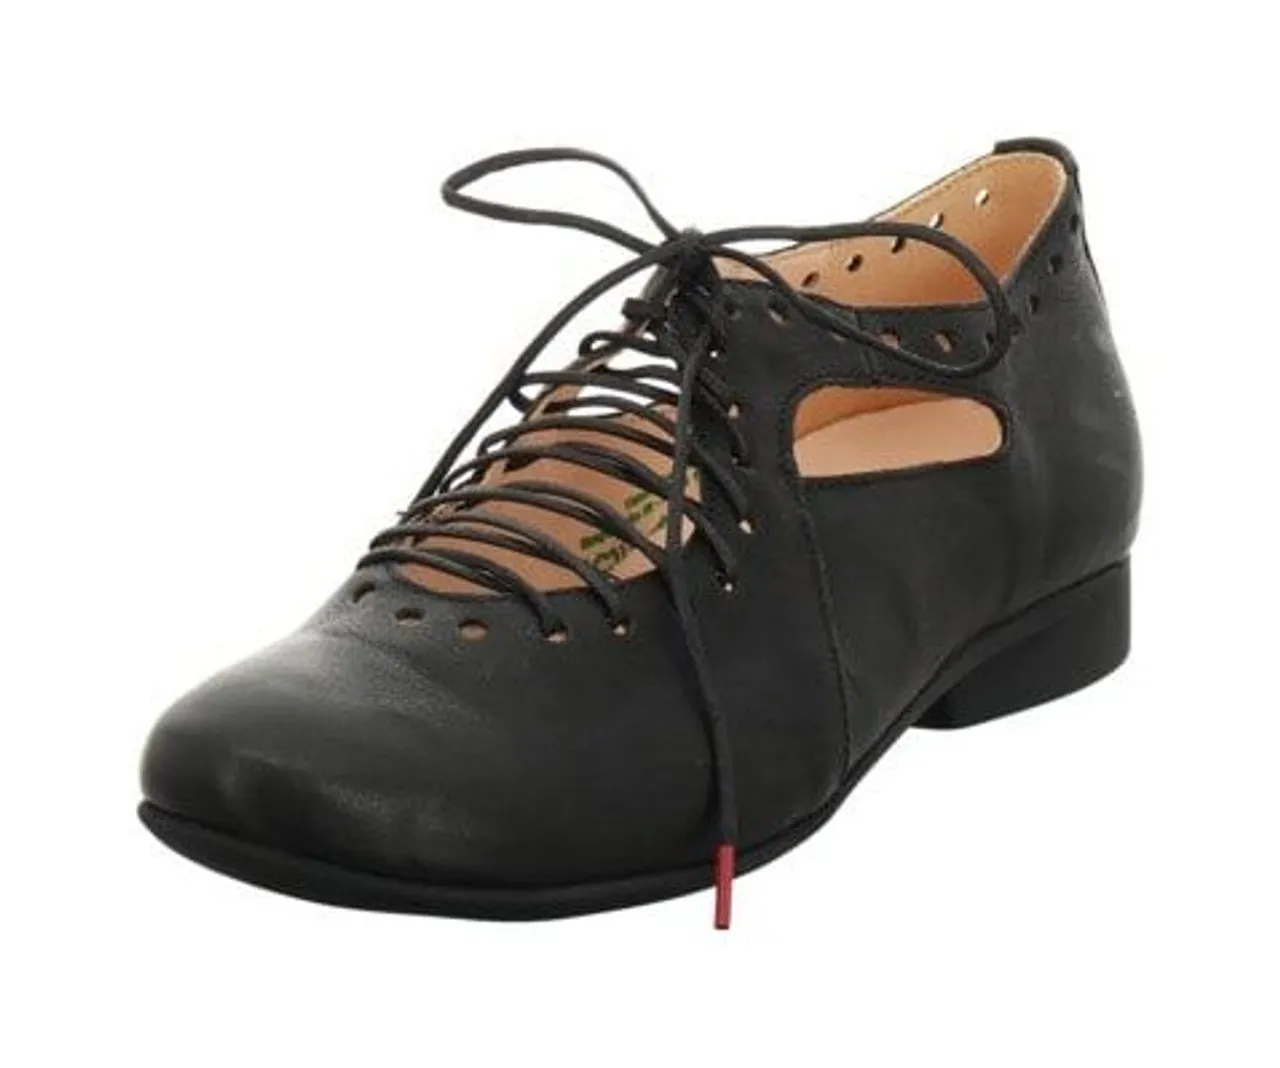 Think! Schnürschuh THINK "GUAD2" Gr. 37, schwarz Damen Schuhe Classic Schnürschuhe mit modischer Schnürung, Freizeitschuh, Halbschuh, Schnürschuh